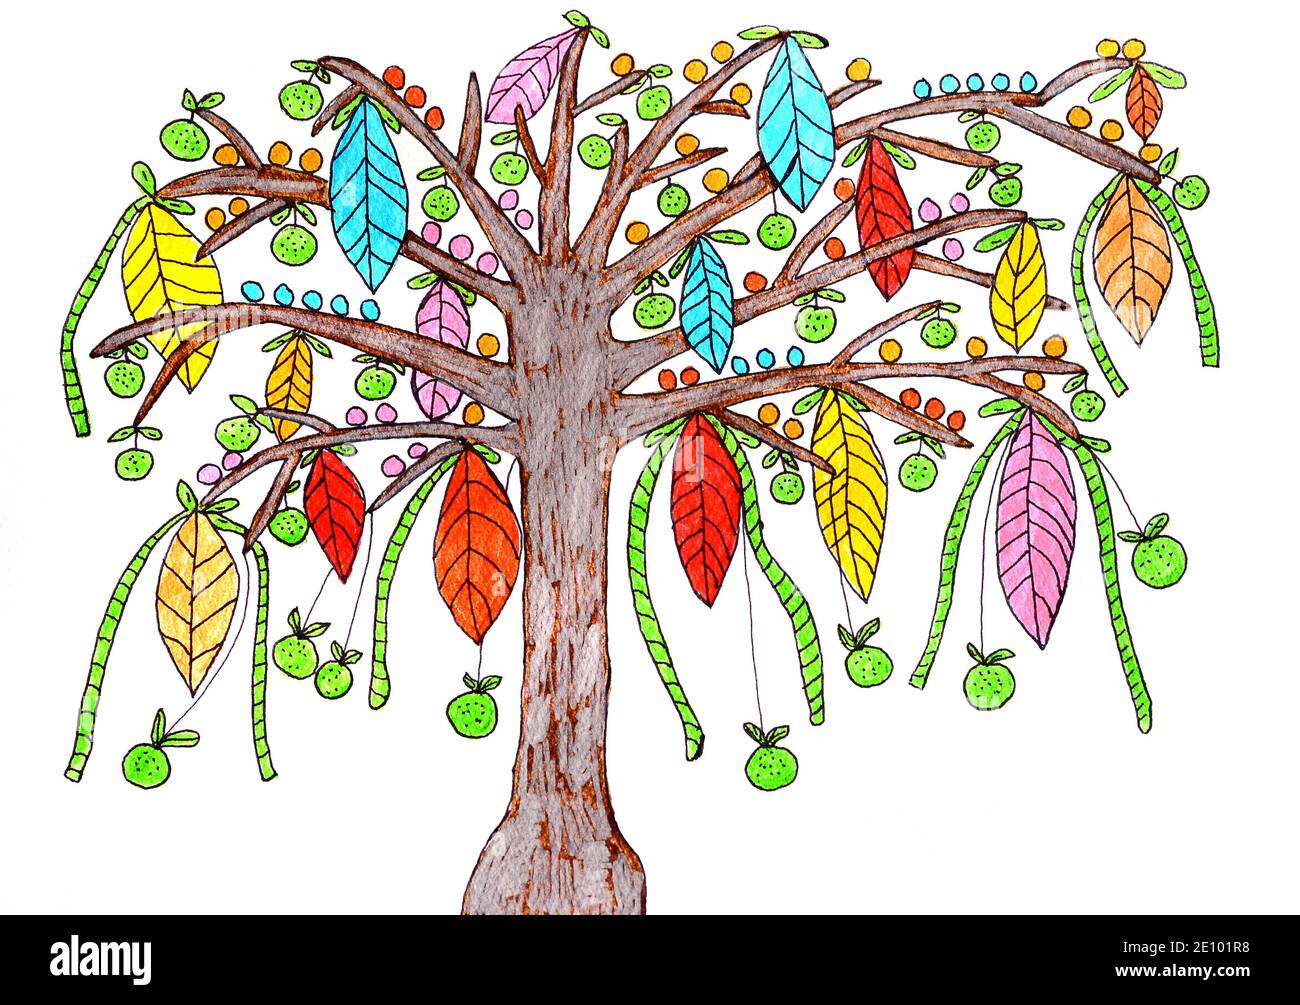 Arbre peint avec des feuilles et des pommes colorées, peinture naïve, fond blanc Banque D'Images